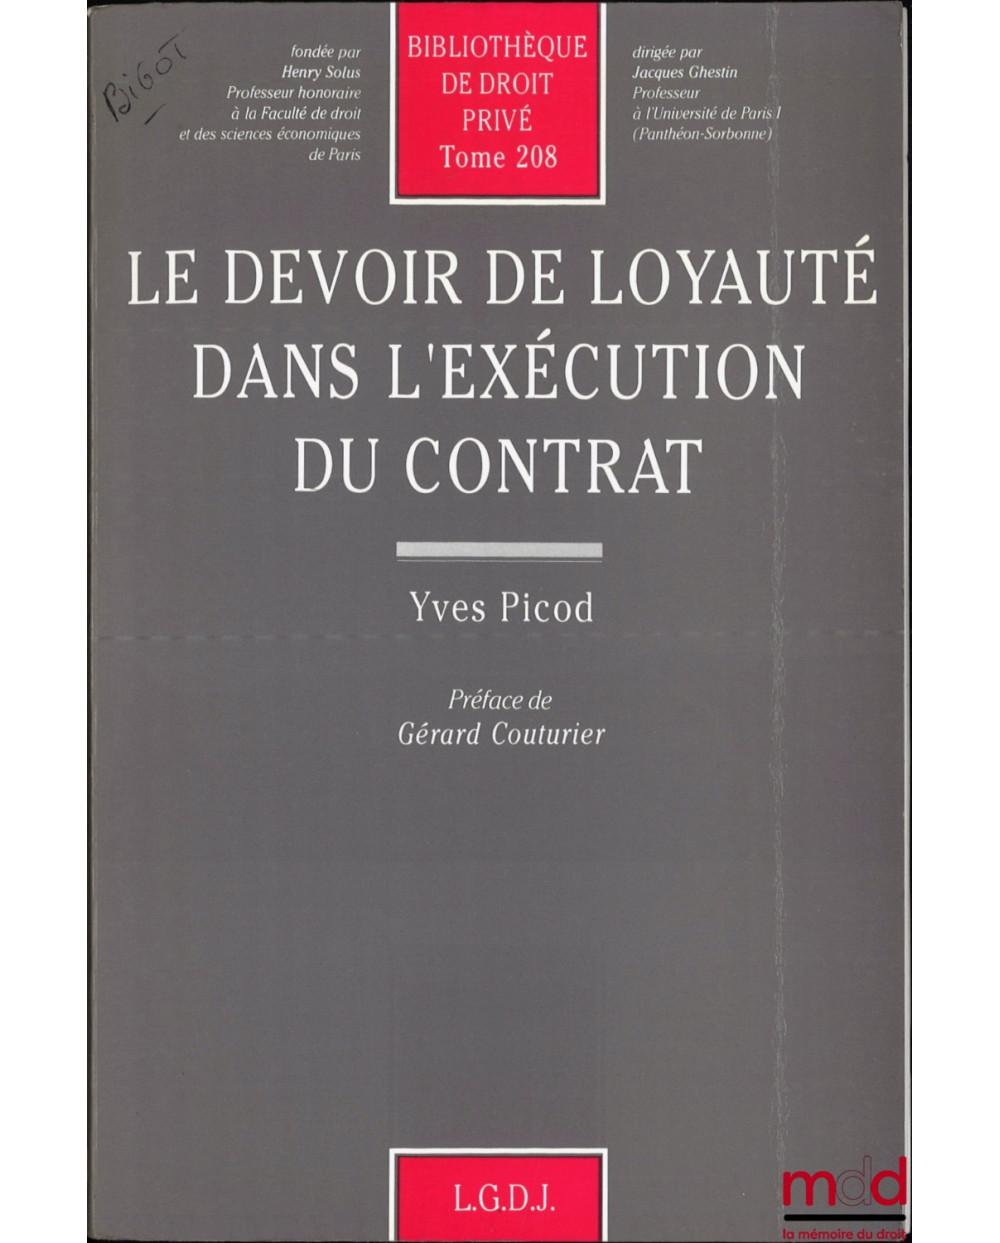 LE DEVOIR DE LOYAUTÉ DANS L’EXÉCUTION DU CONTRAT, Préface de Gérard Couturier, Bibl. de droit privé, t. 208